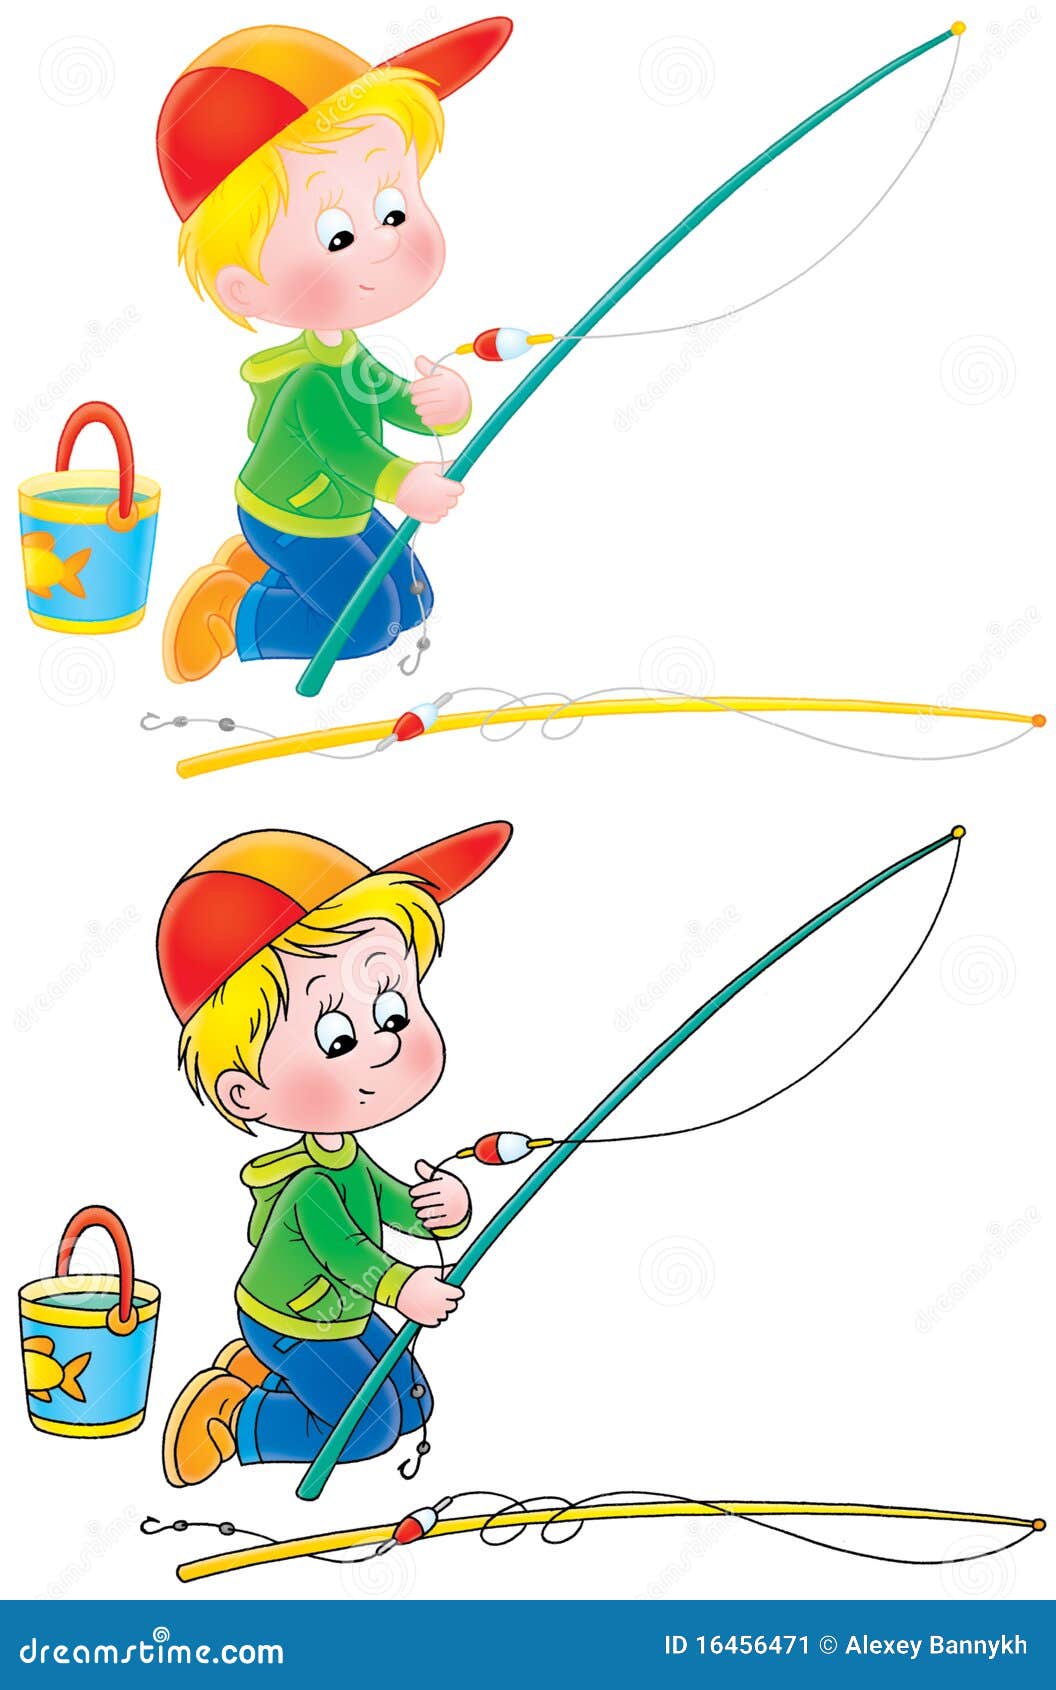 Fishing boy stock illustration. Illustration of fisher - 16456471